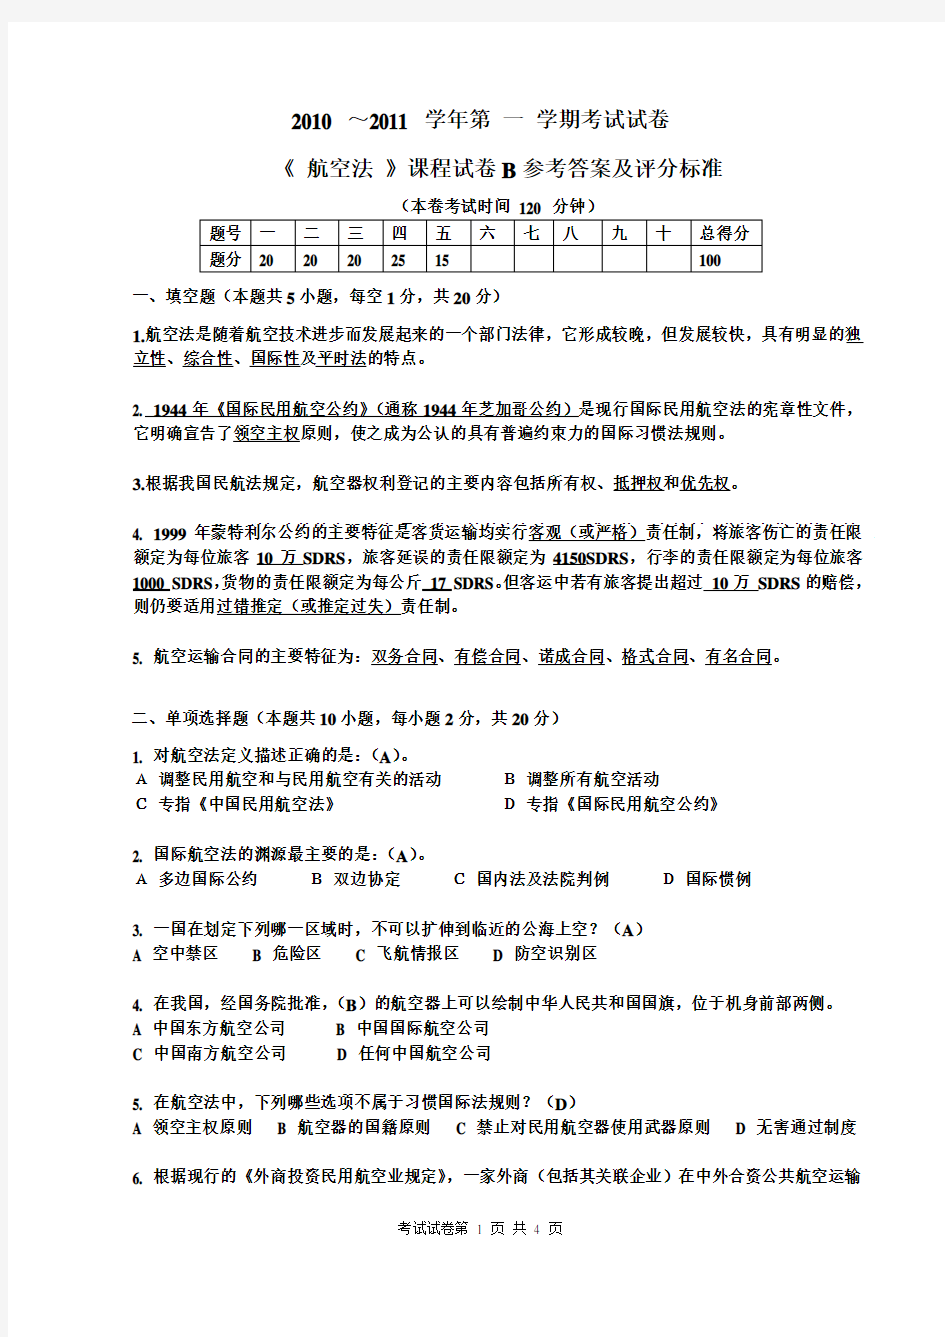 2010-2011(1)航空法试卷B答案__上海工程技术大学